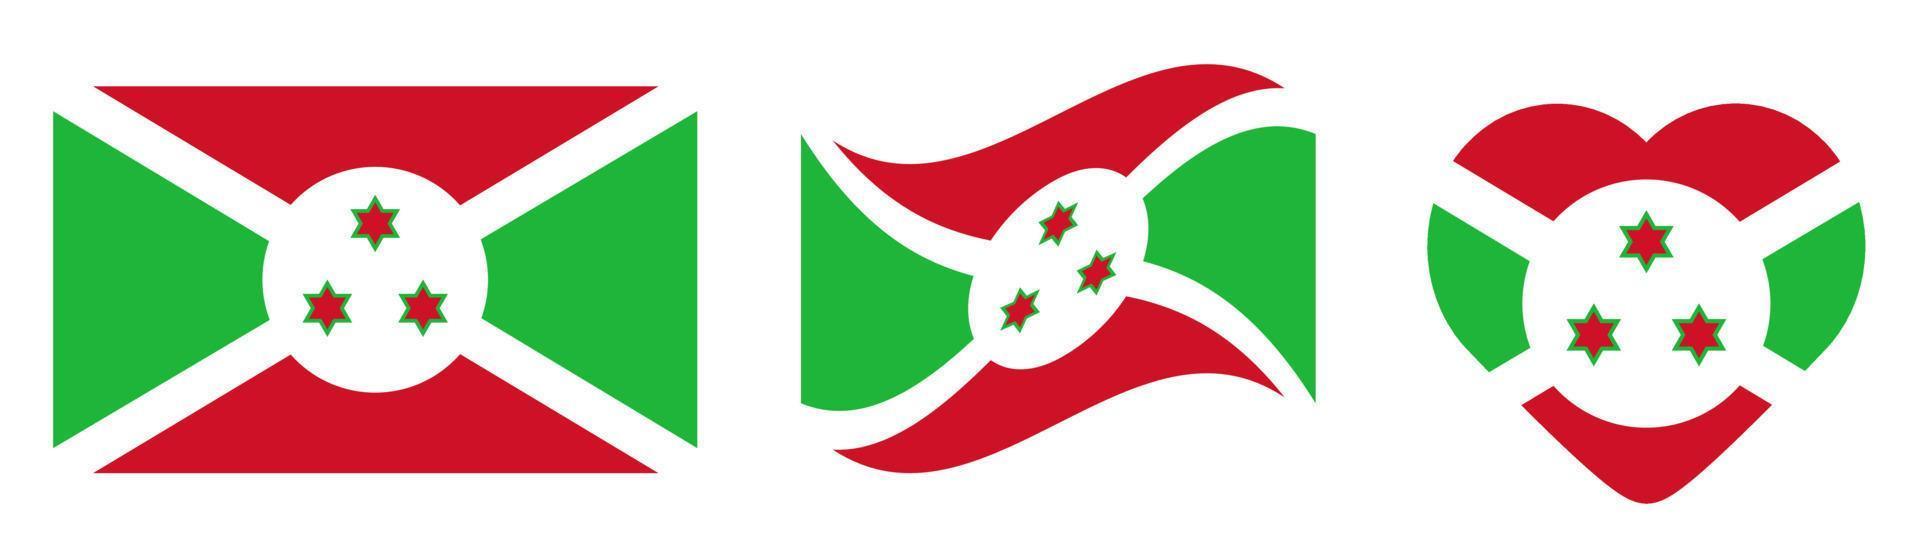 bandeira nacional do burundi, ilustração vetorial. vetor